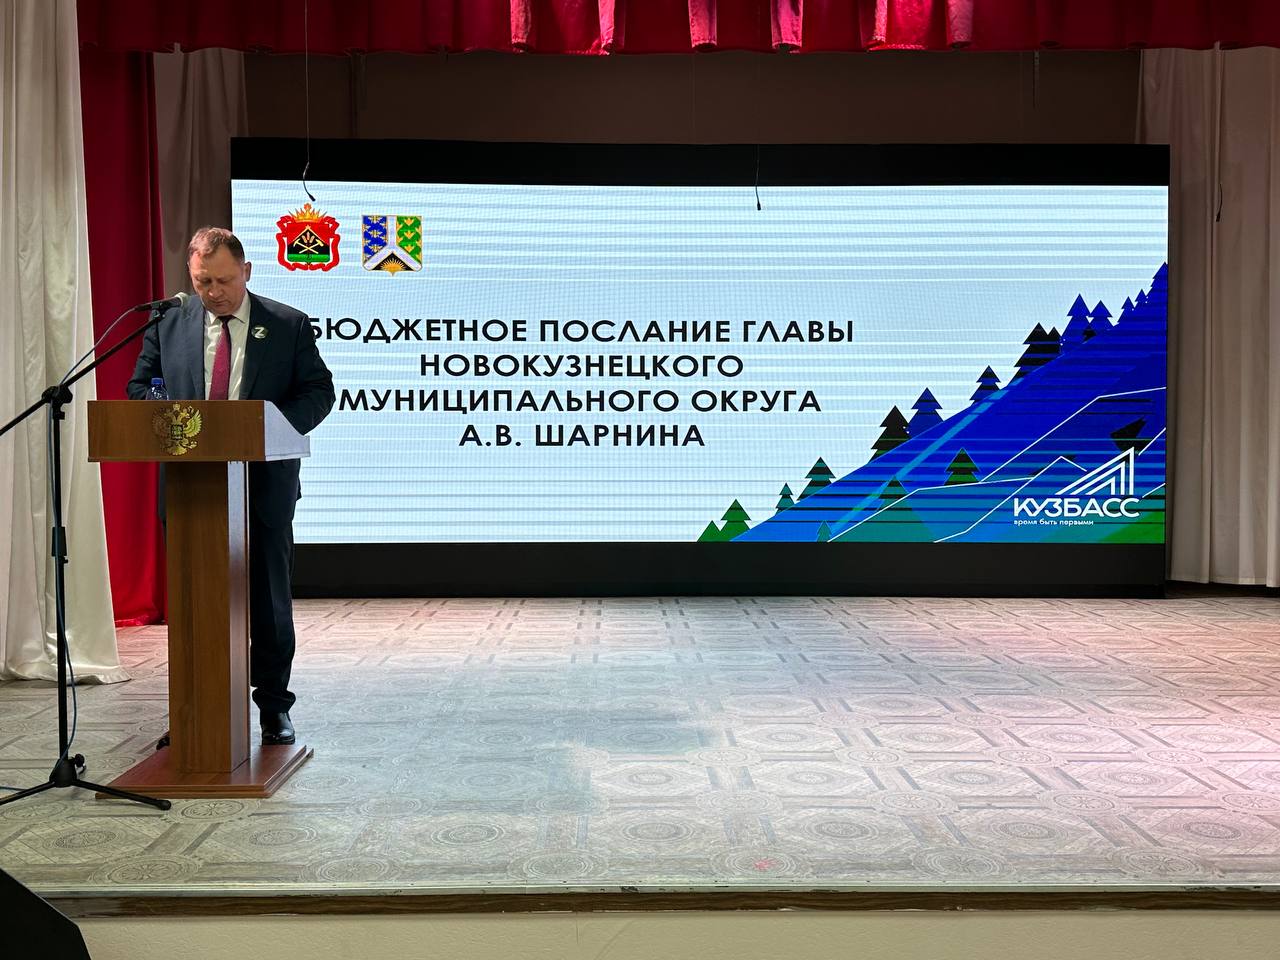 Какие изменения в Новокузнецком округе произойдут в новом году?